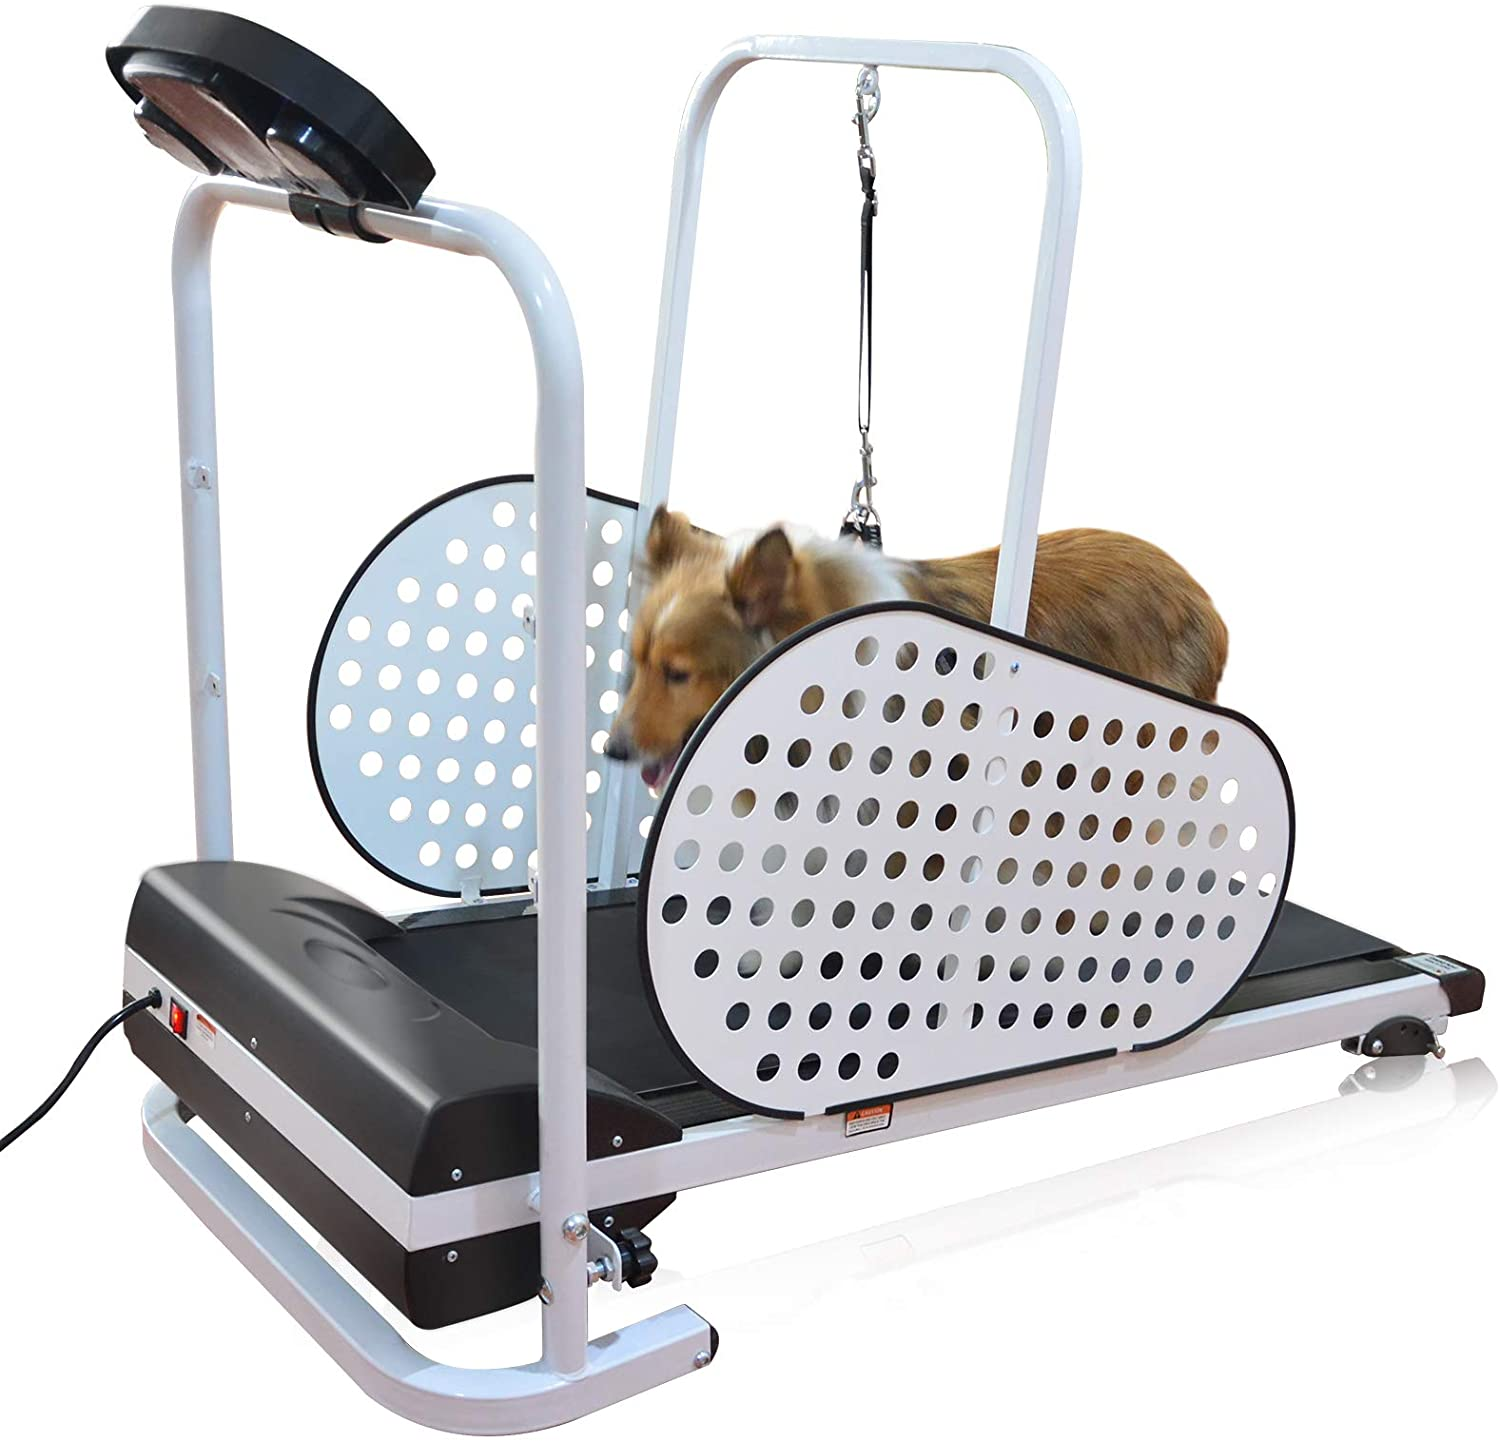 A dog on a doggy treadmill